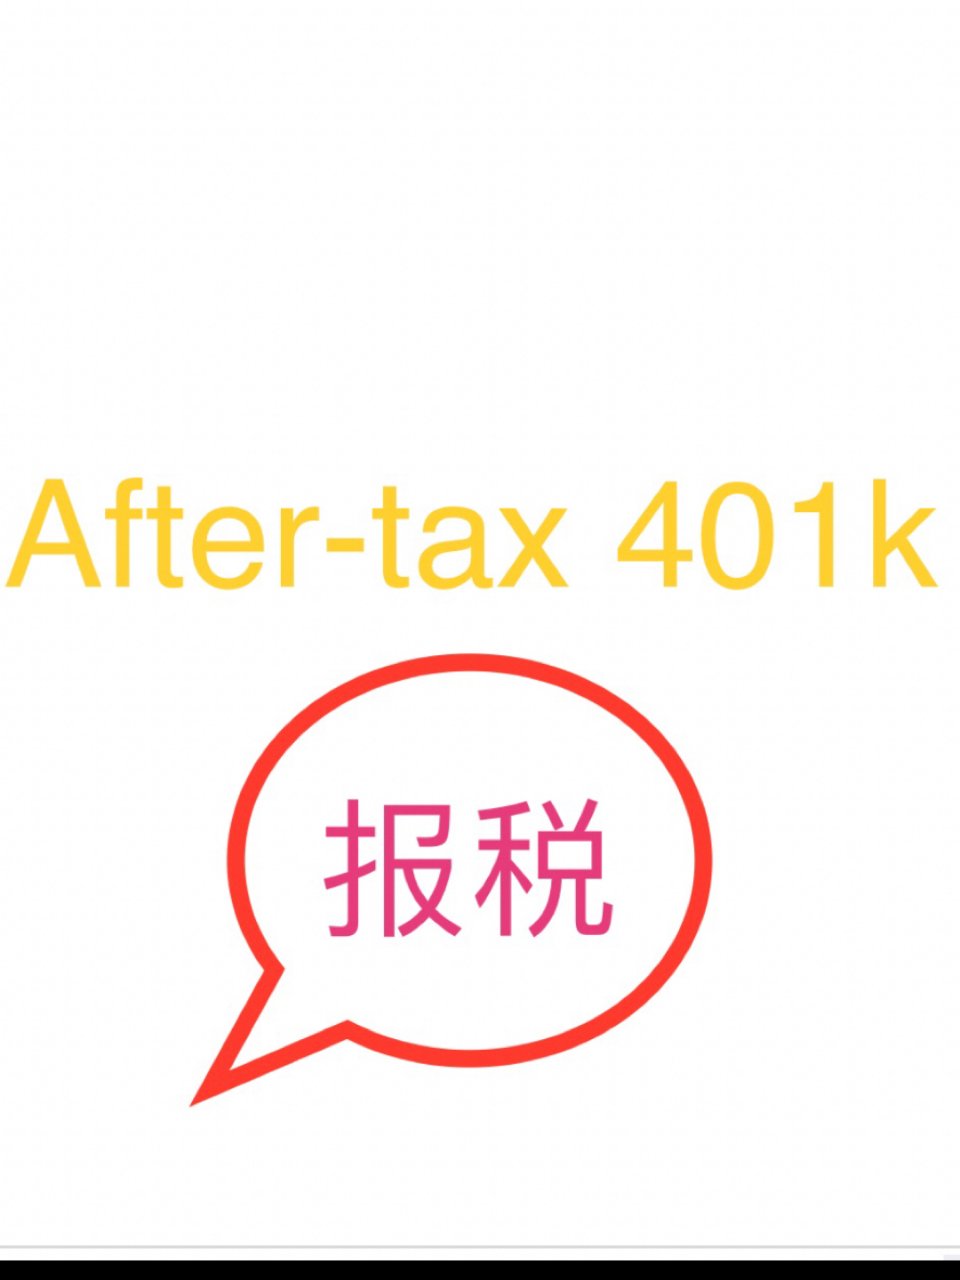 After-tax 401k 报税...